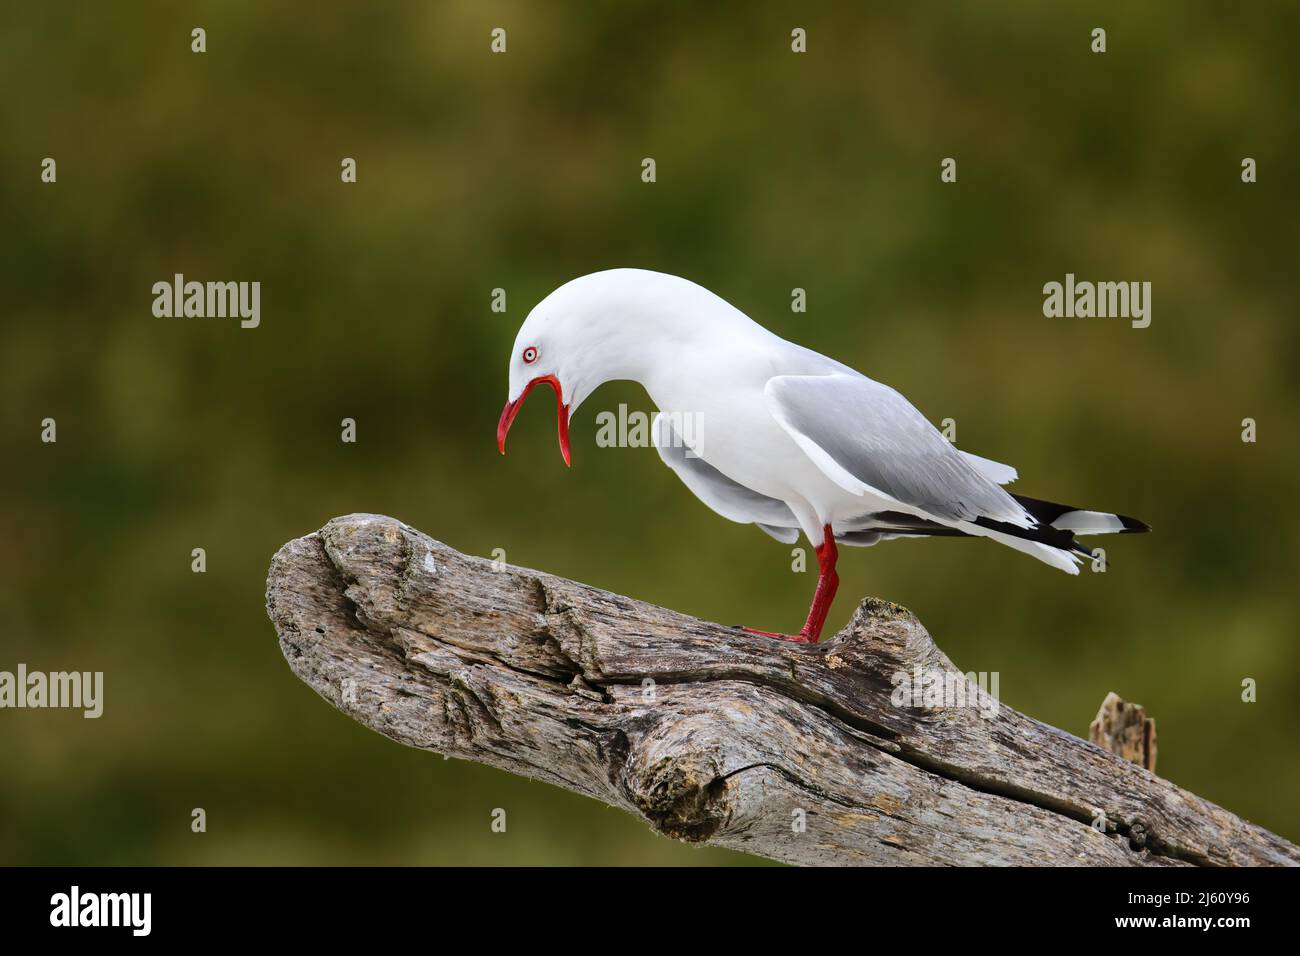 Rosso-fatturati gull chiamando, Kaikoura peninsula, South Island, in Nuova Zelanda. Questo uccello è nativo di Nuova Zelanda. Foto Stock